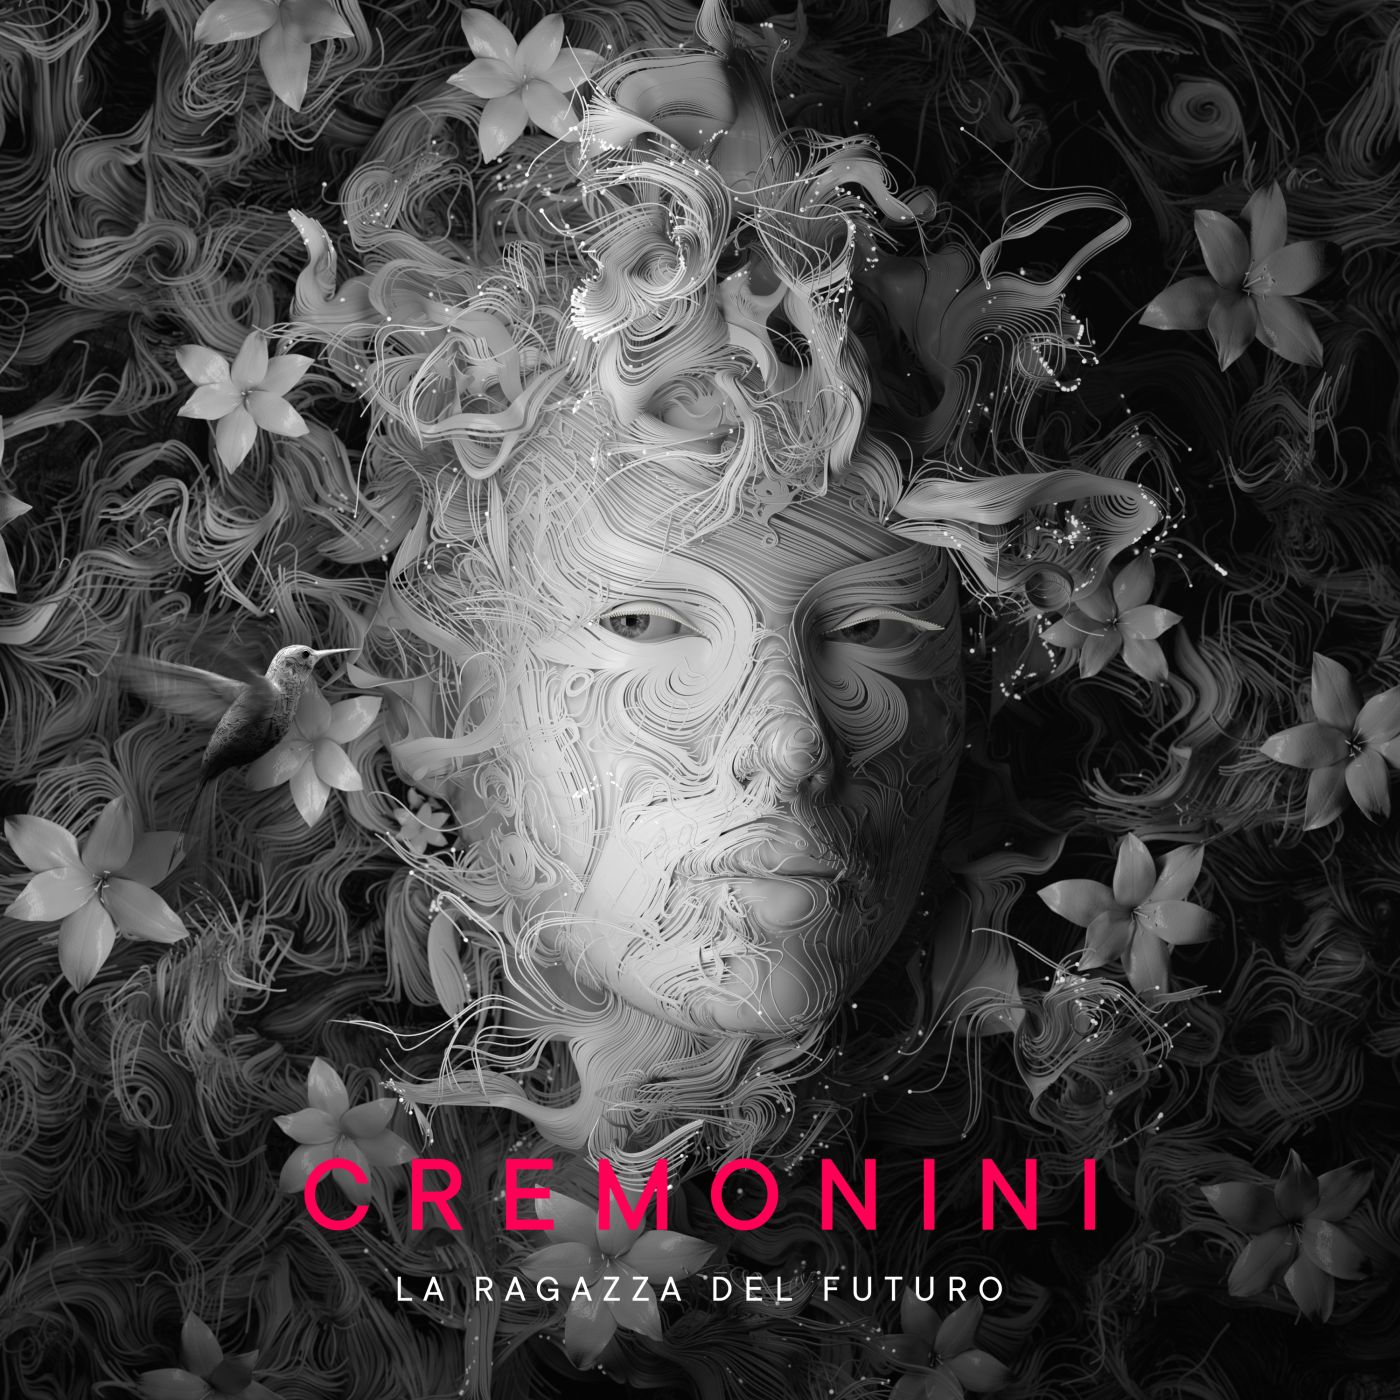 Cesare Cremonini album e tour - Immagini